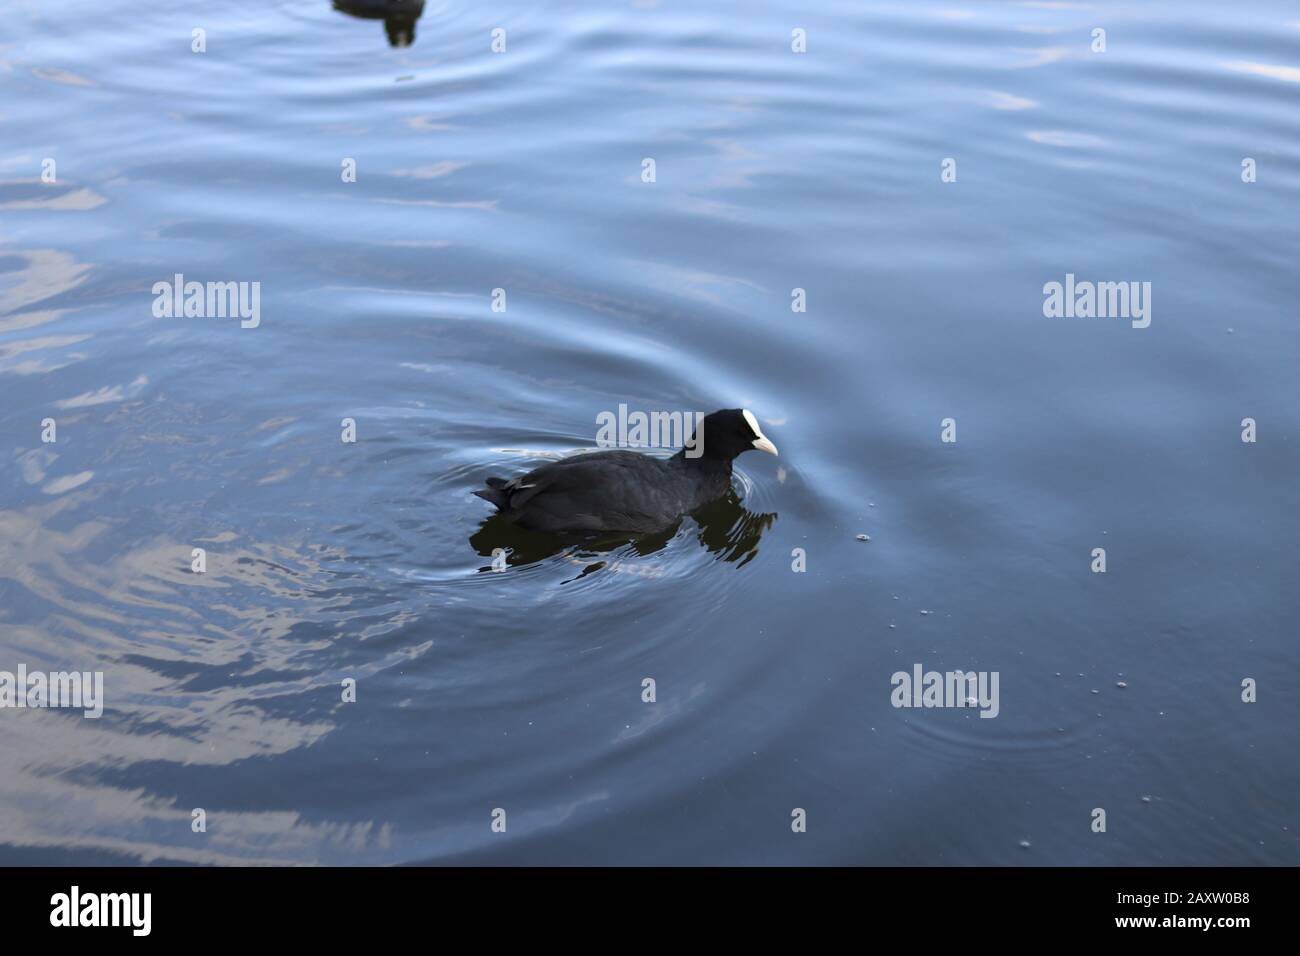 american coot, water bird swimming, bird swimming in a pond, water reflection, american coot swimming, black feathers and white beak Stock Photo